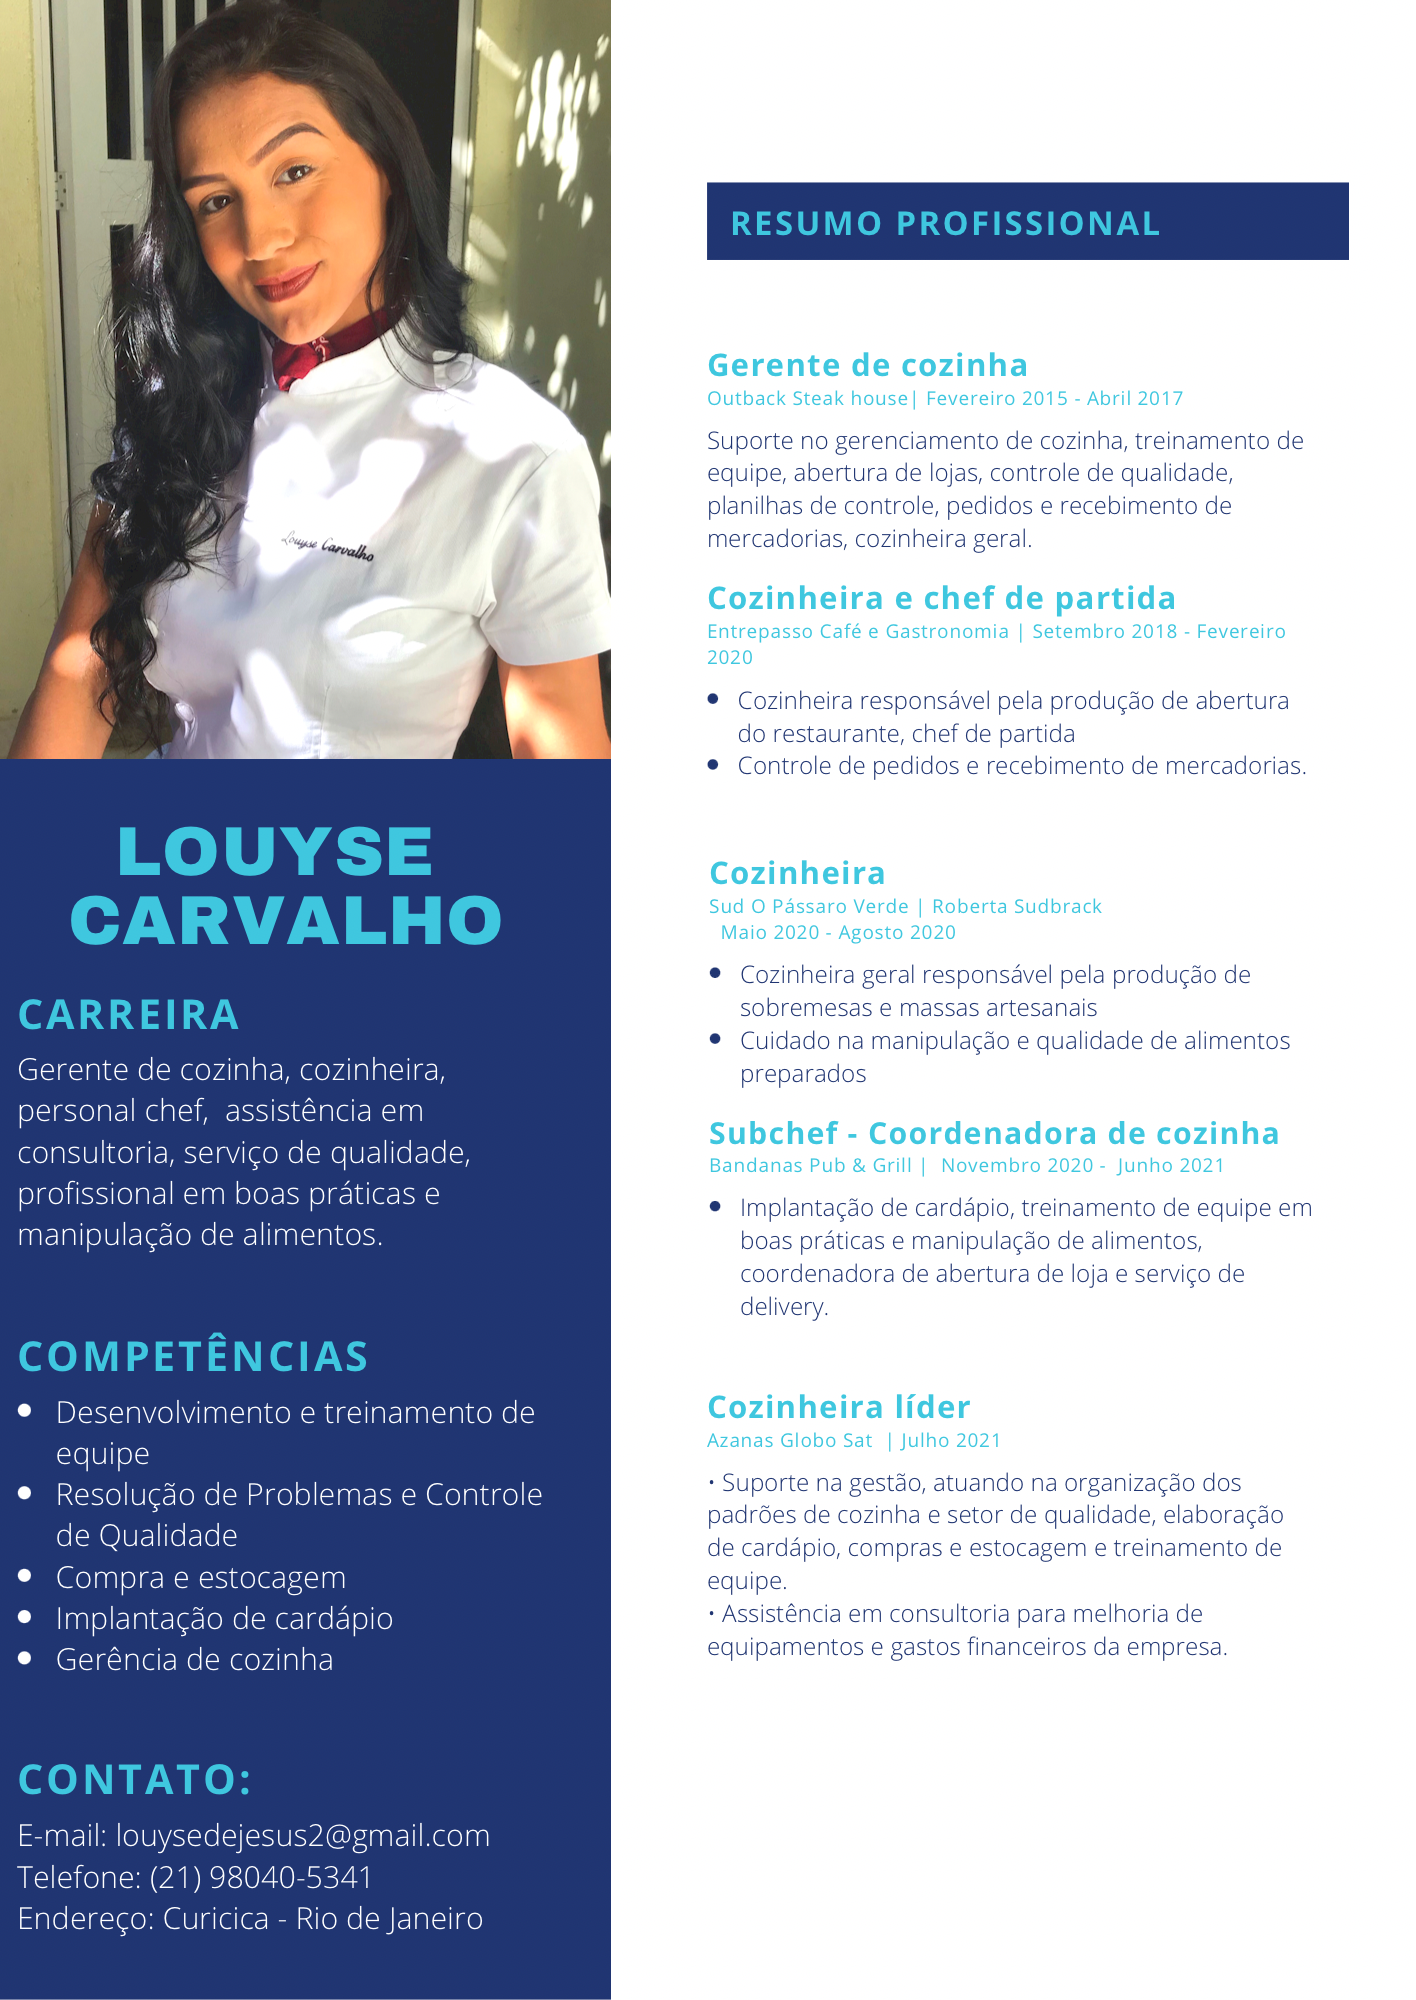 LOUYSE
CARVALHO

CARREIRA

COMPETENCIAS

1 ento e treinamer